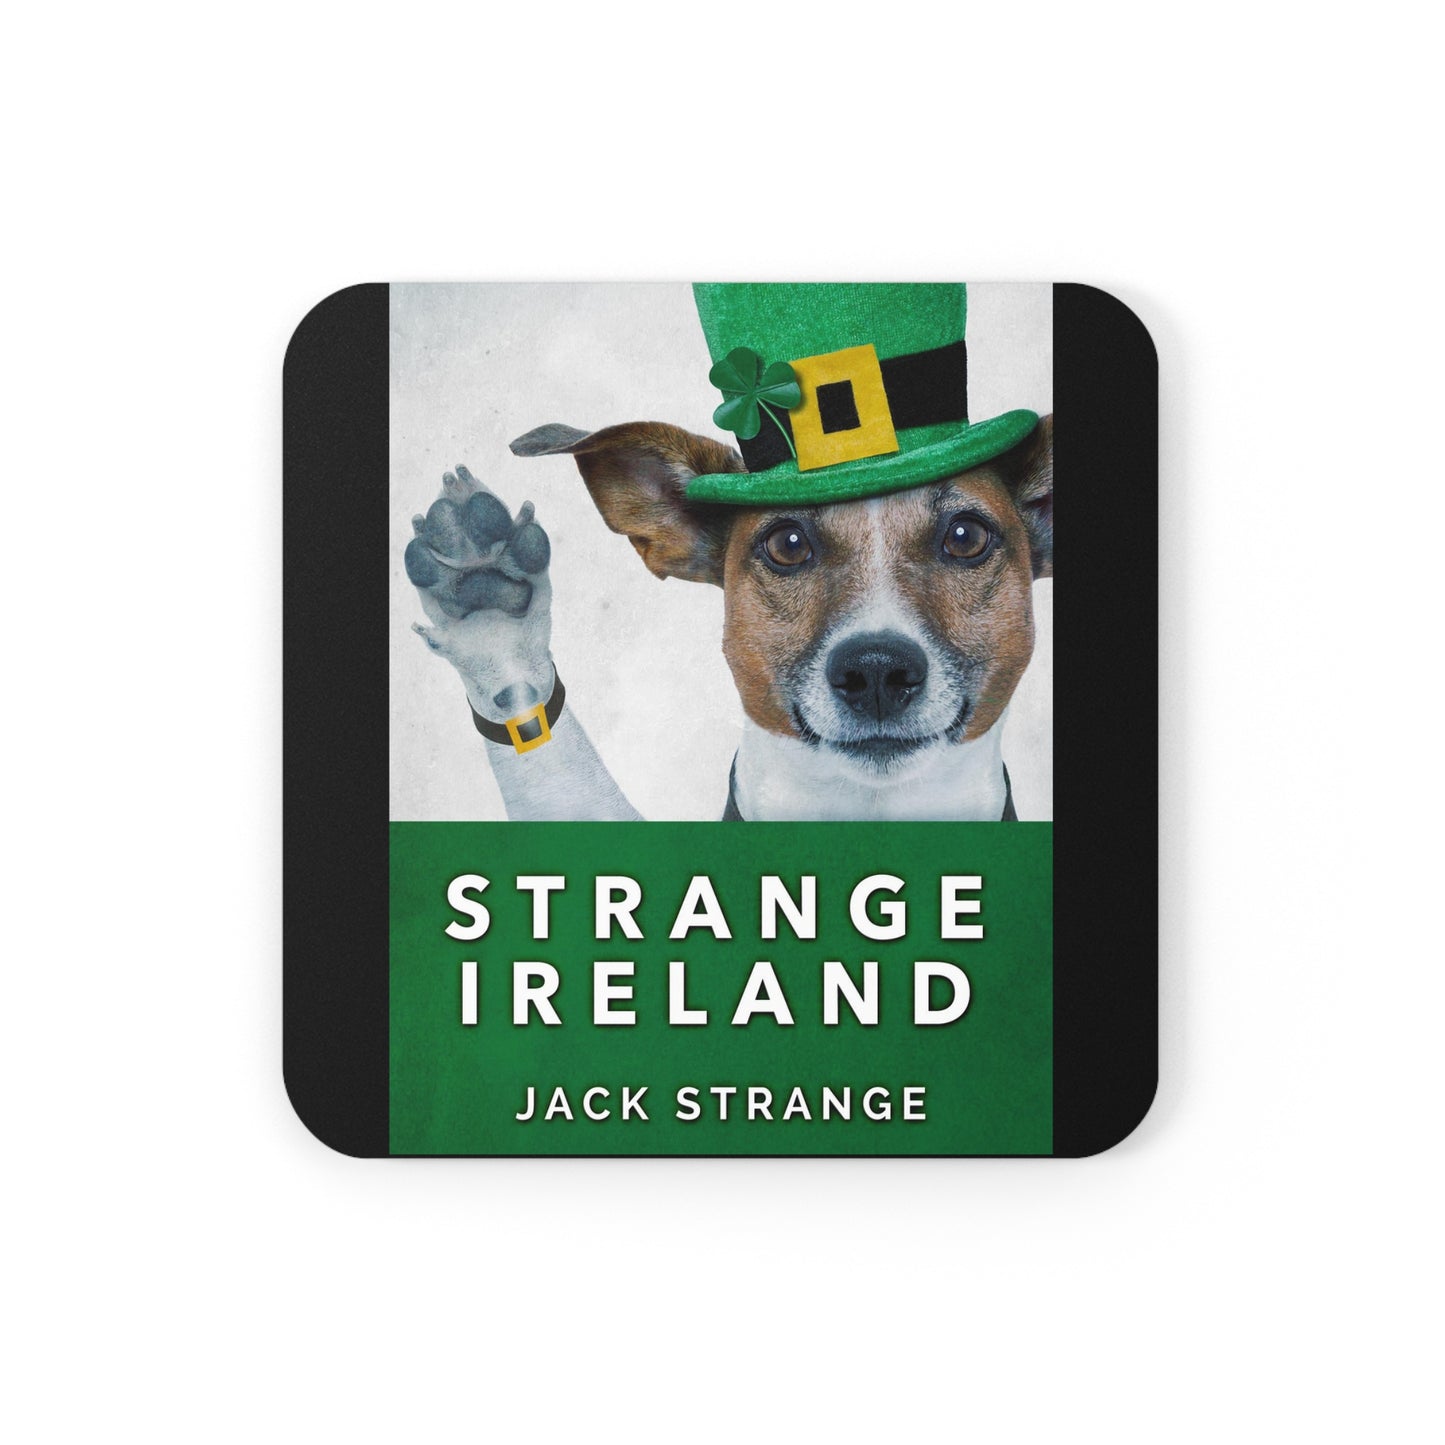 Strange Ireland - Corkwood Coaster Set